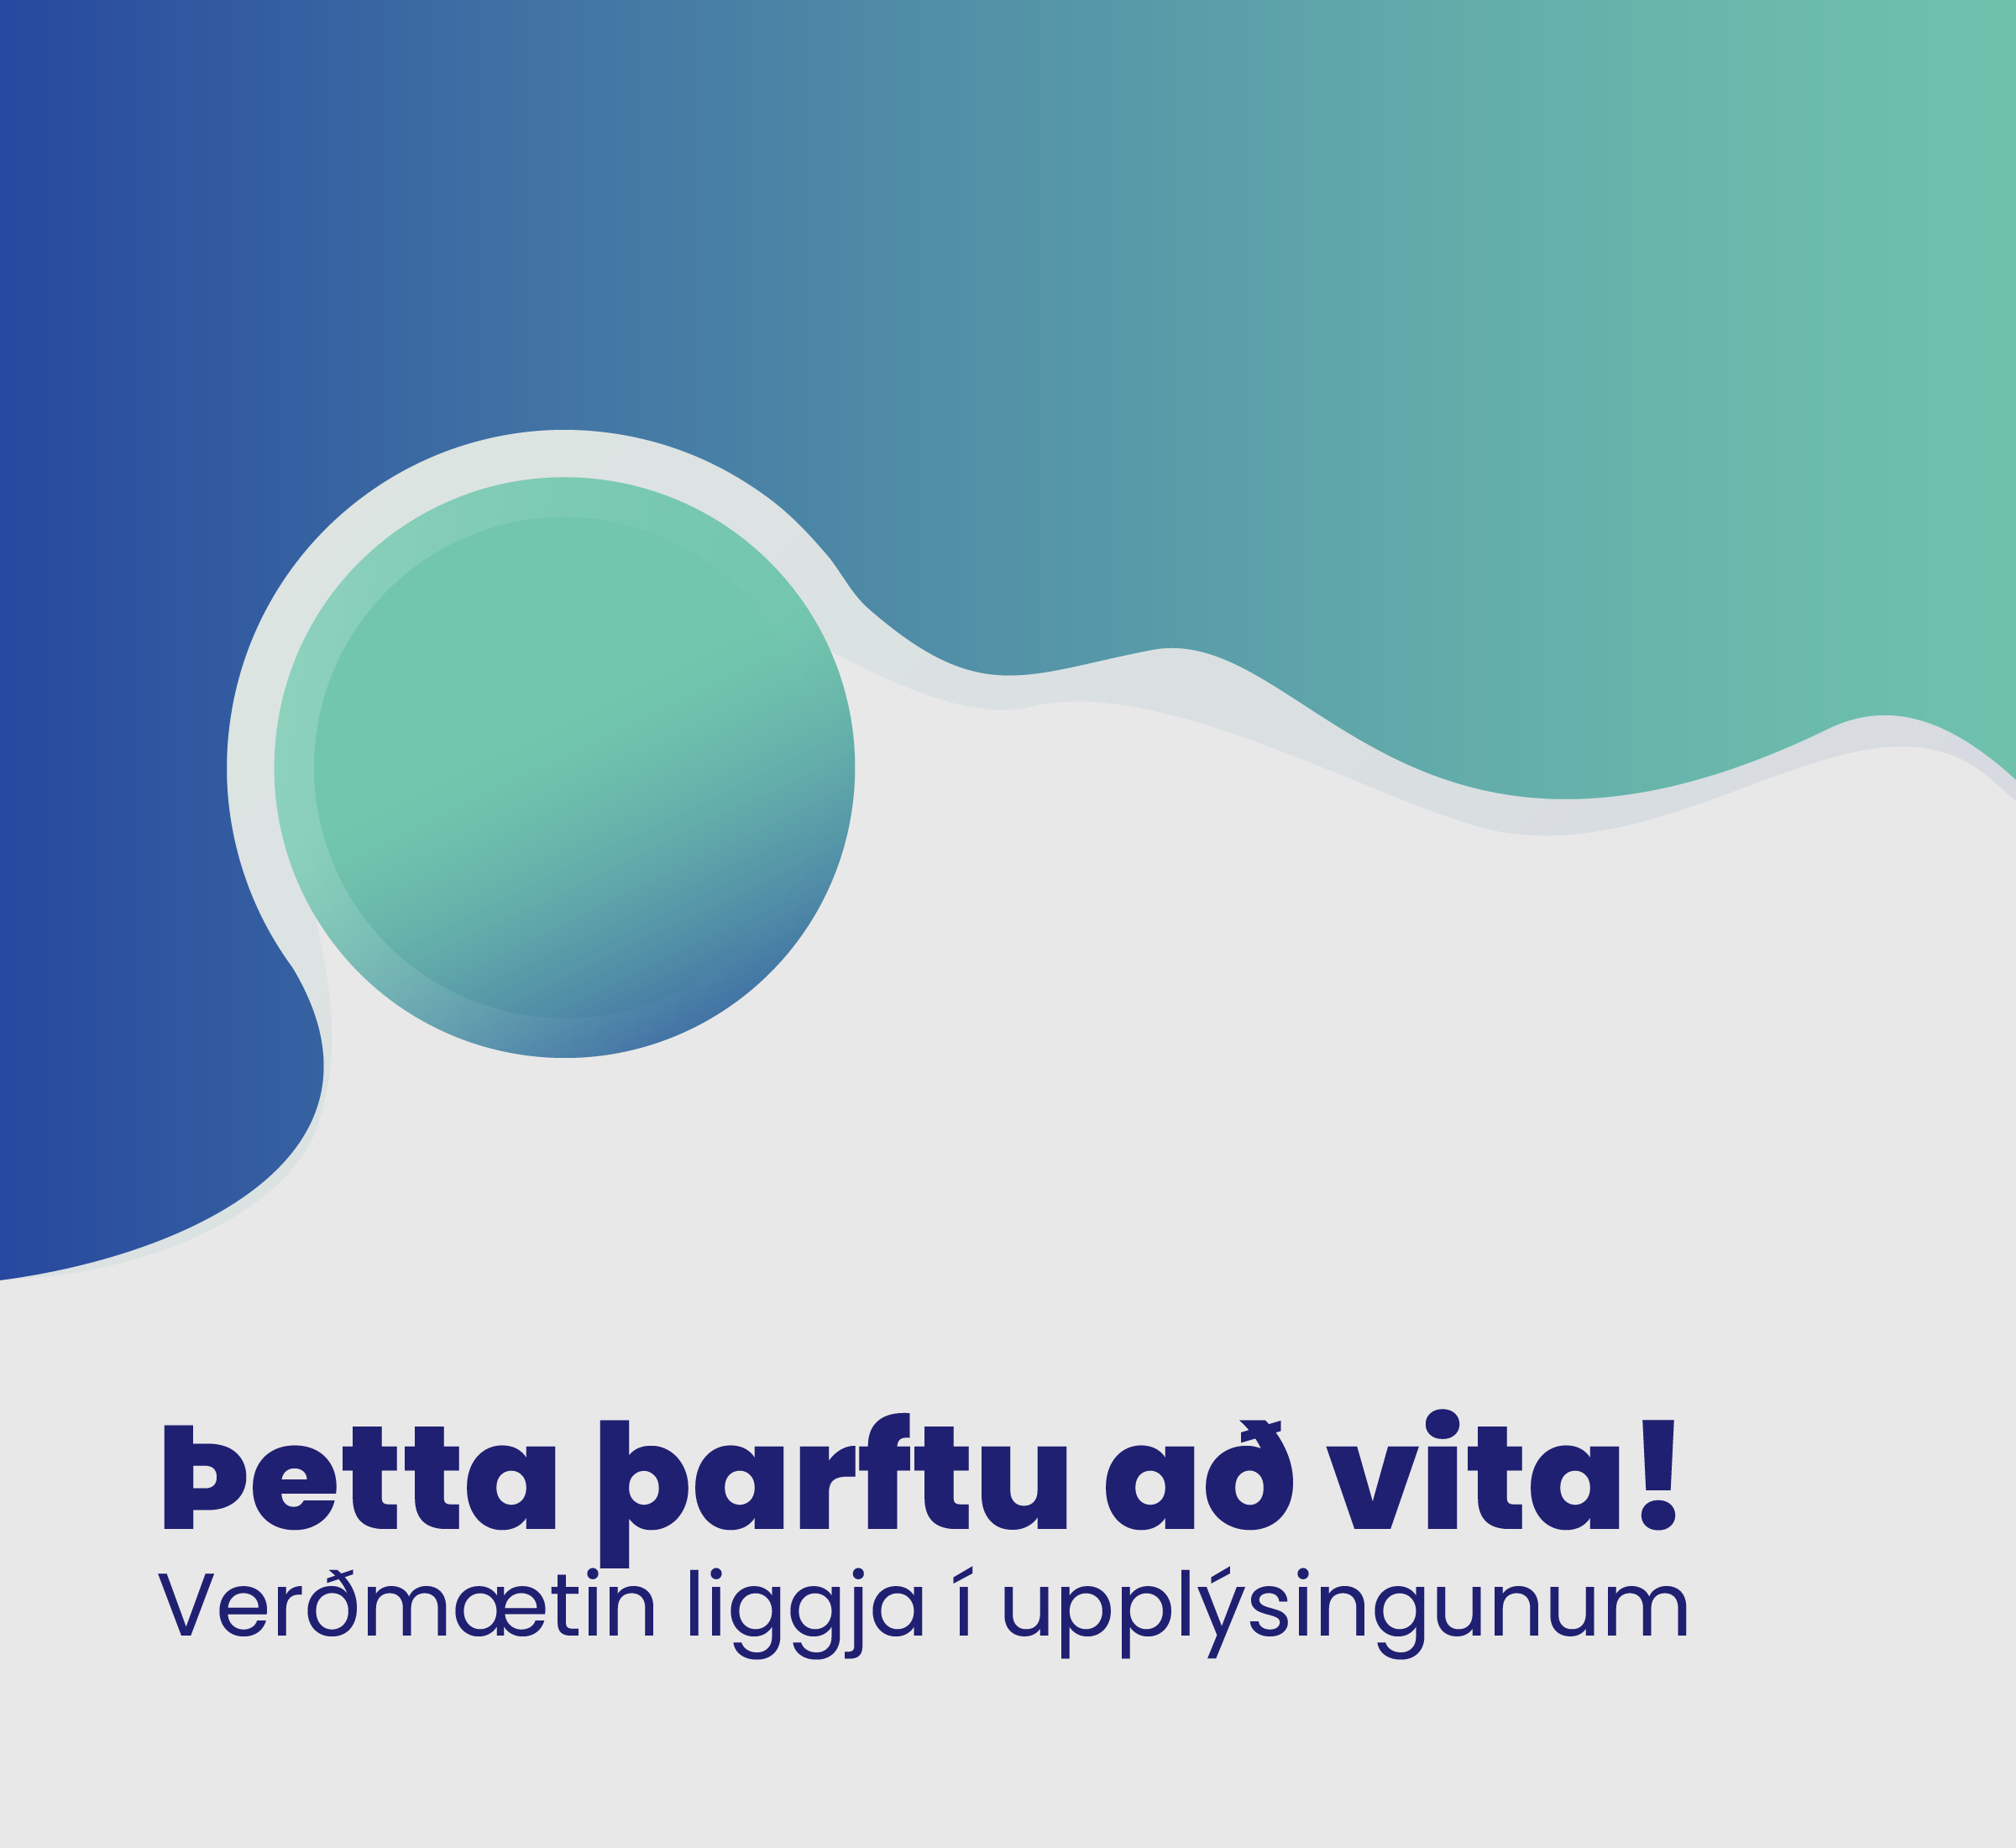 You are currently viewing Þetta þarftu að vita! Verðmætin liggja í upplýsingunum